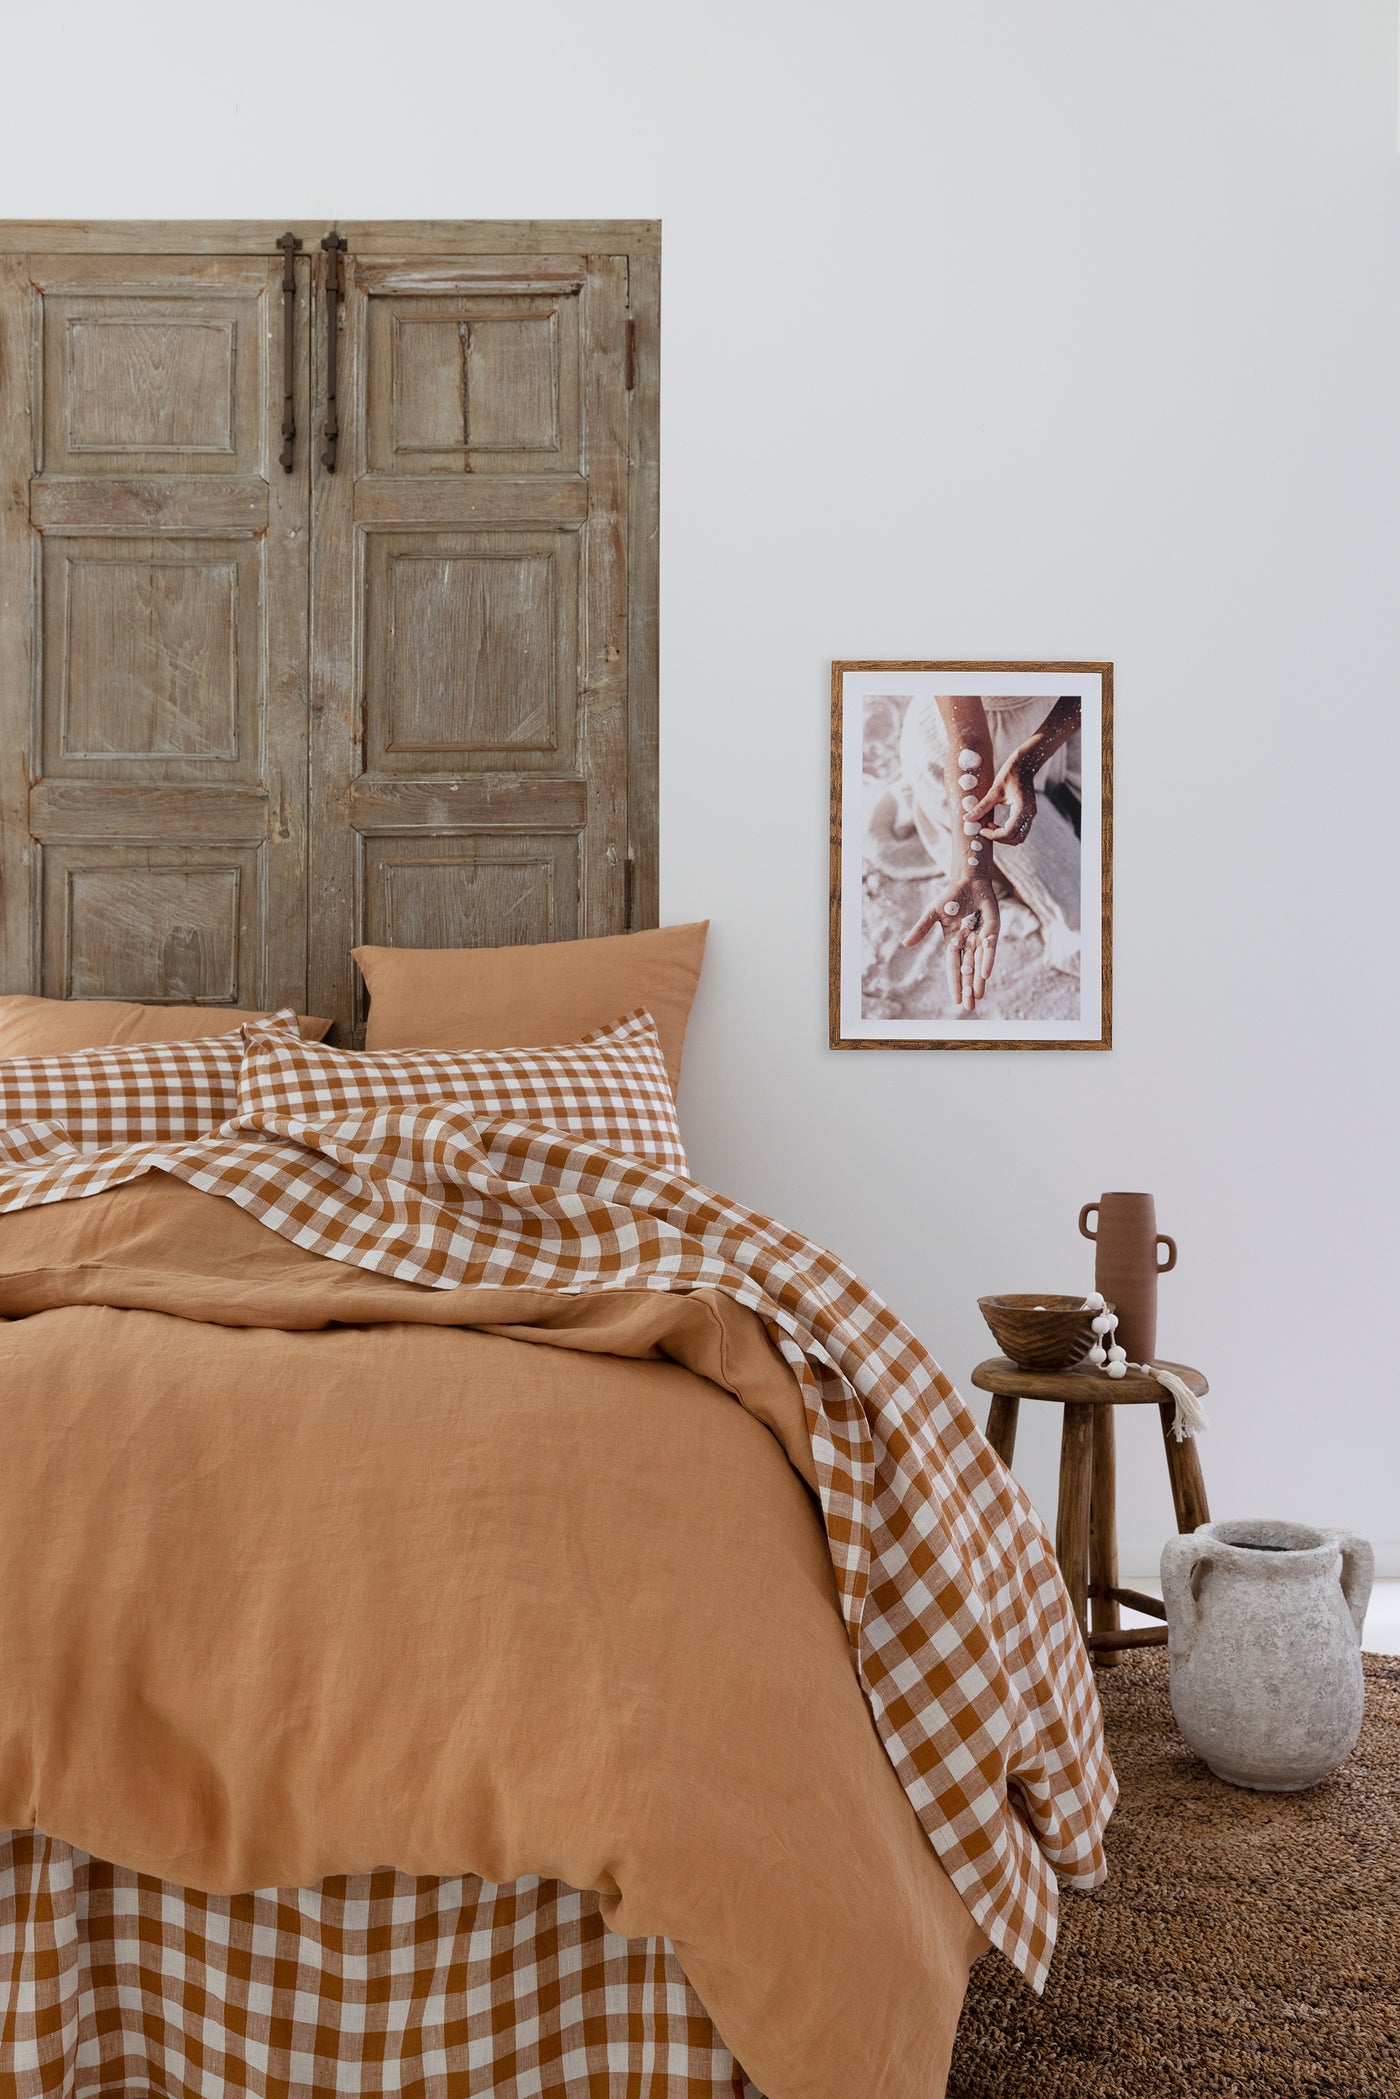 10 Benefits of Sleeping in Linen - LinenBarn